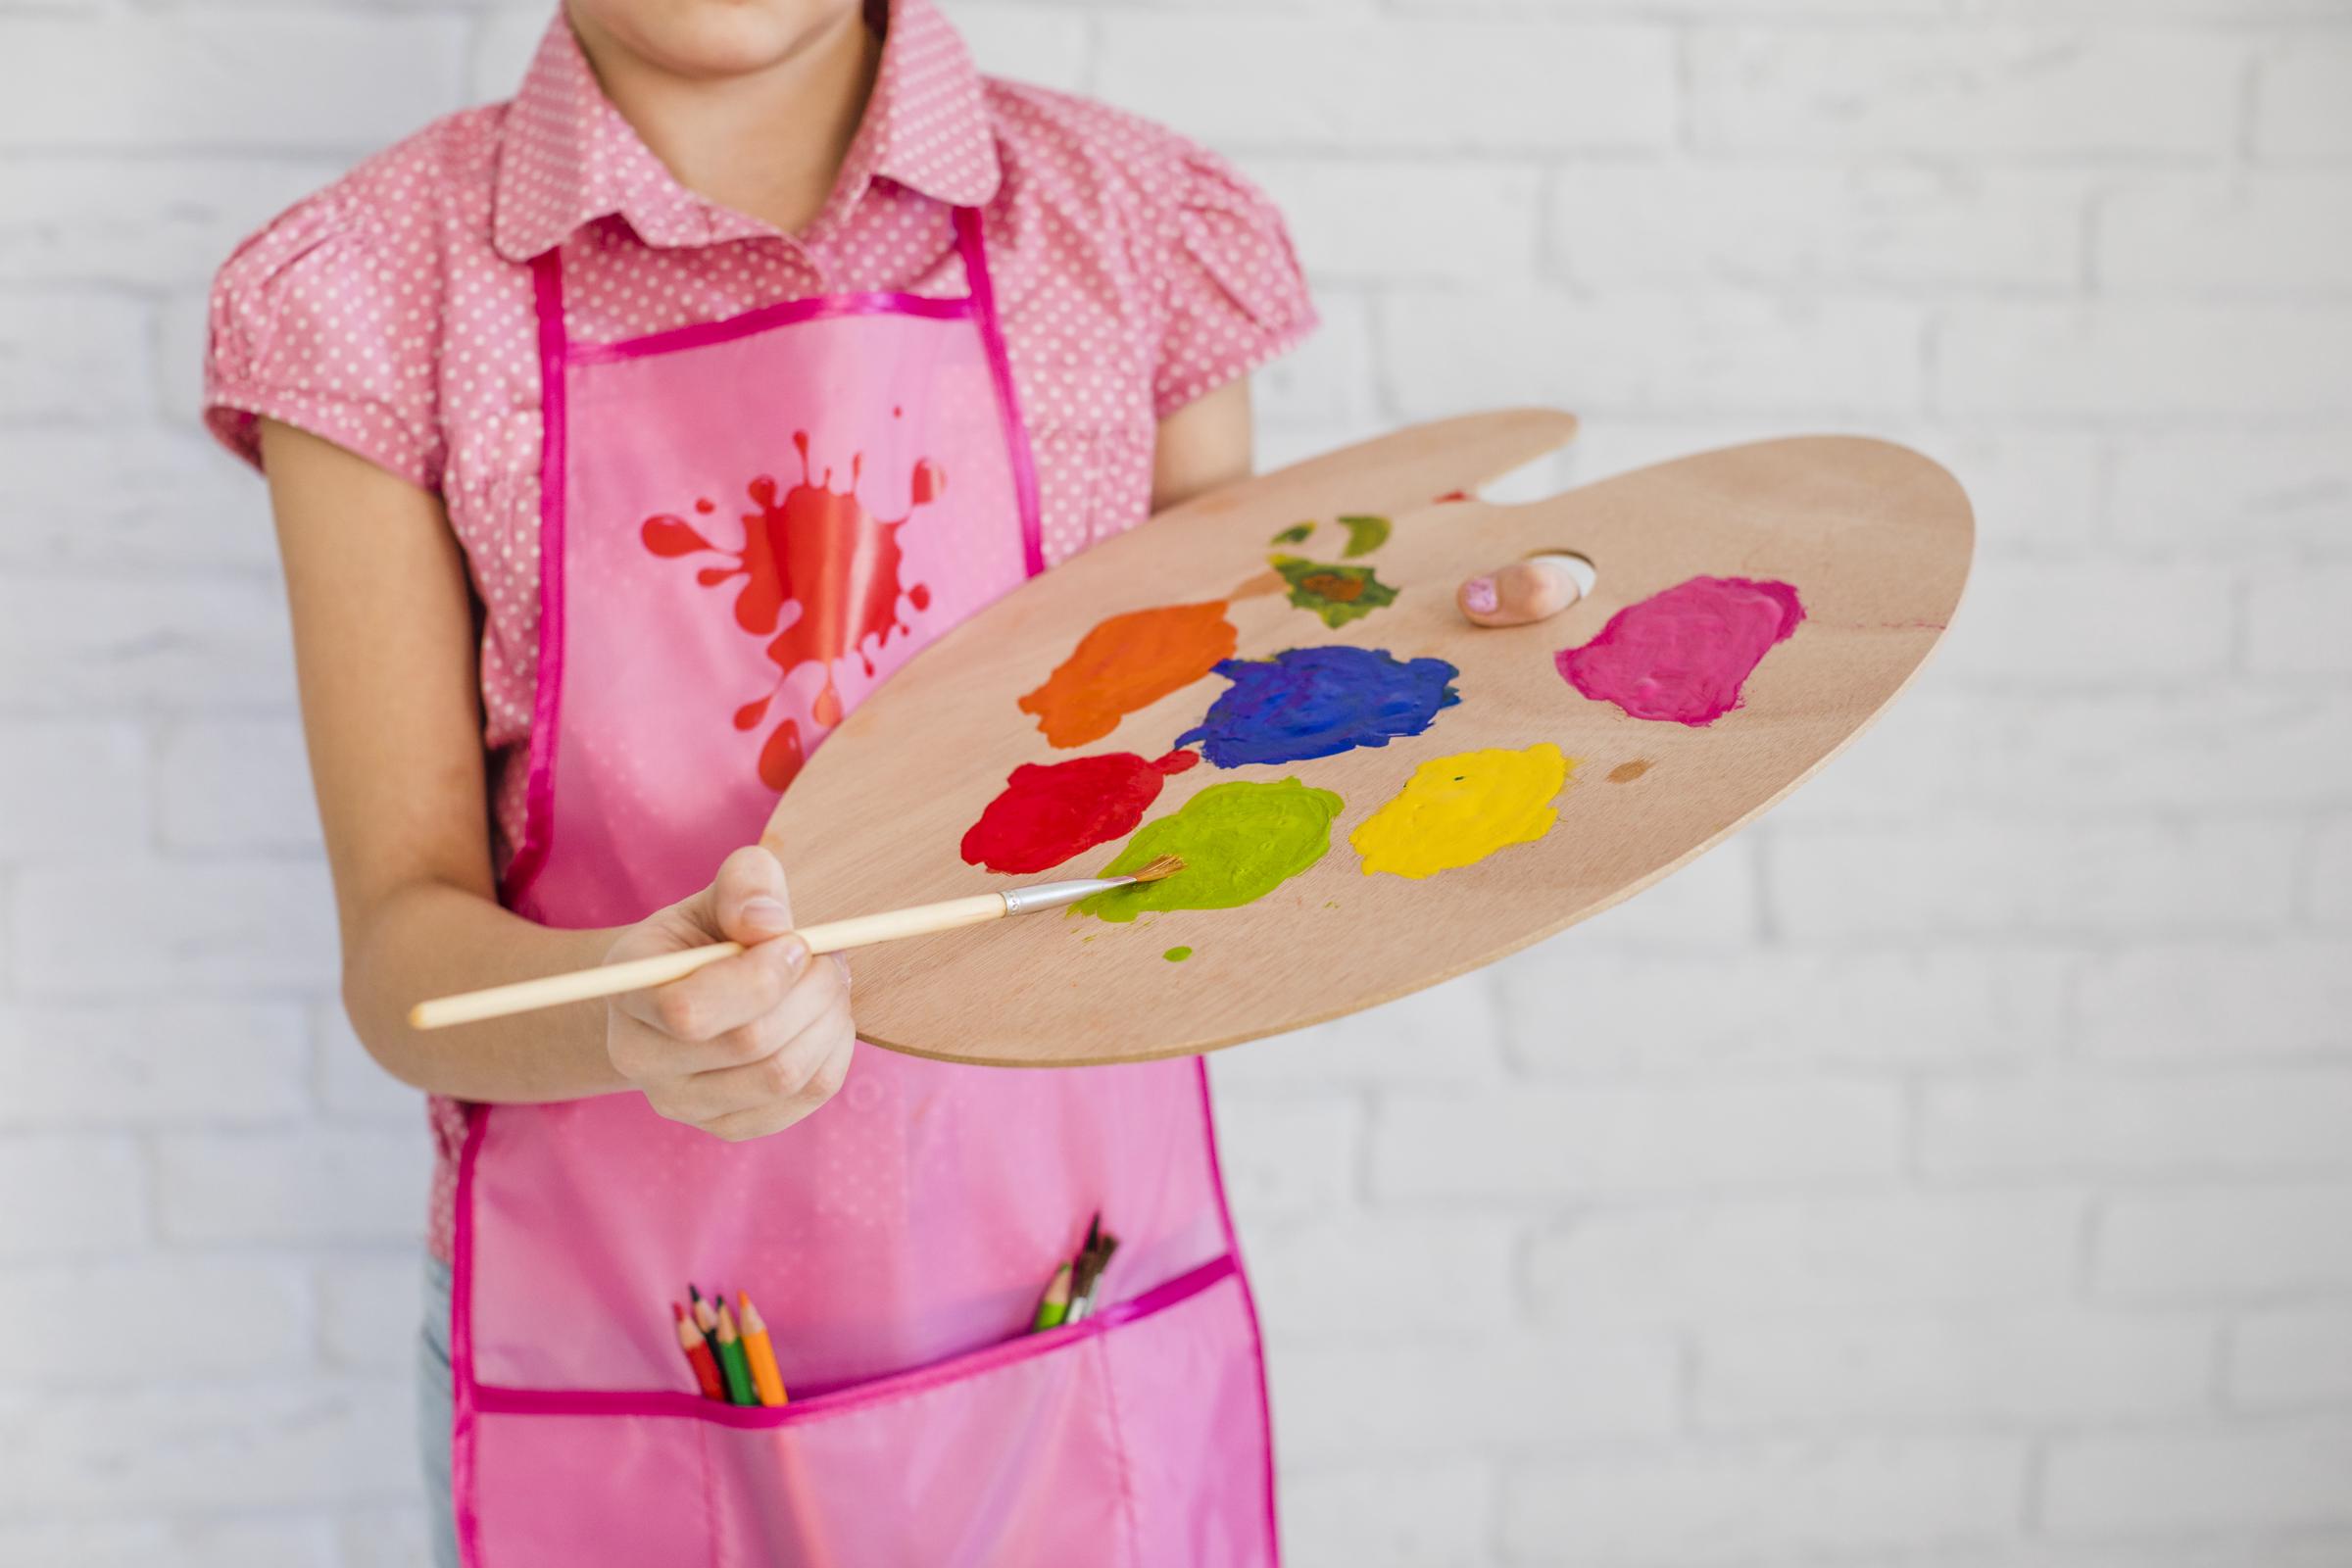 A kid holding a color palette | Source: Freepik